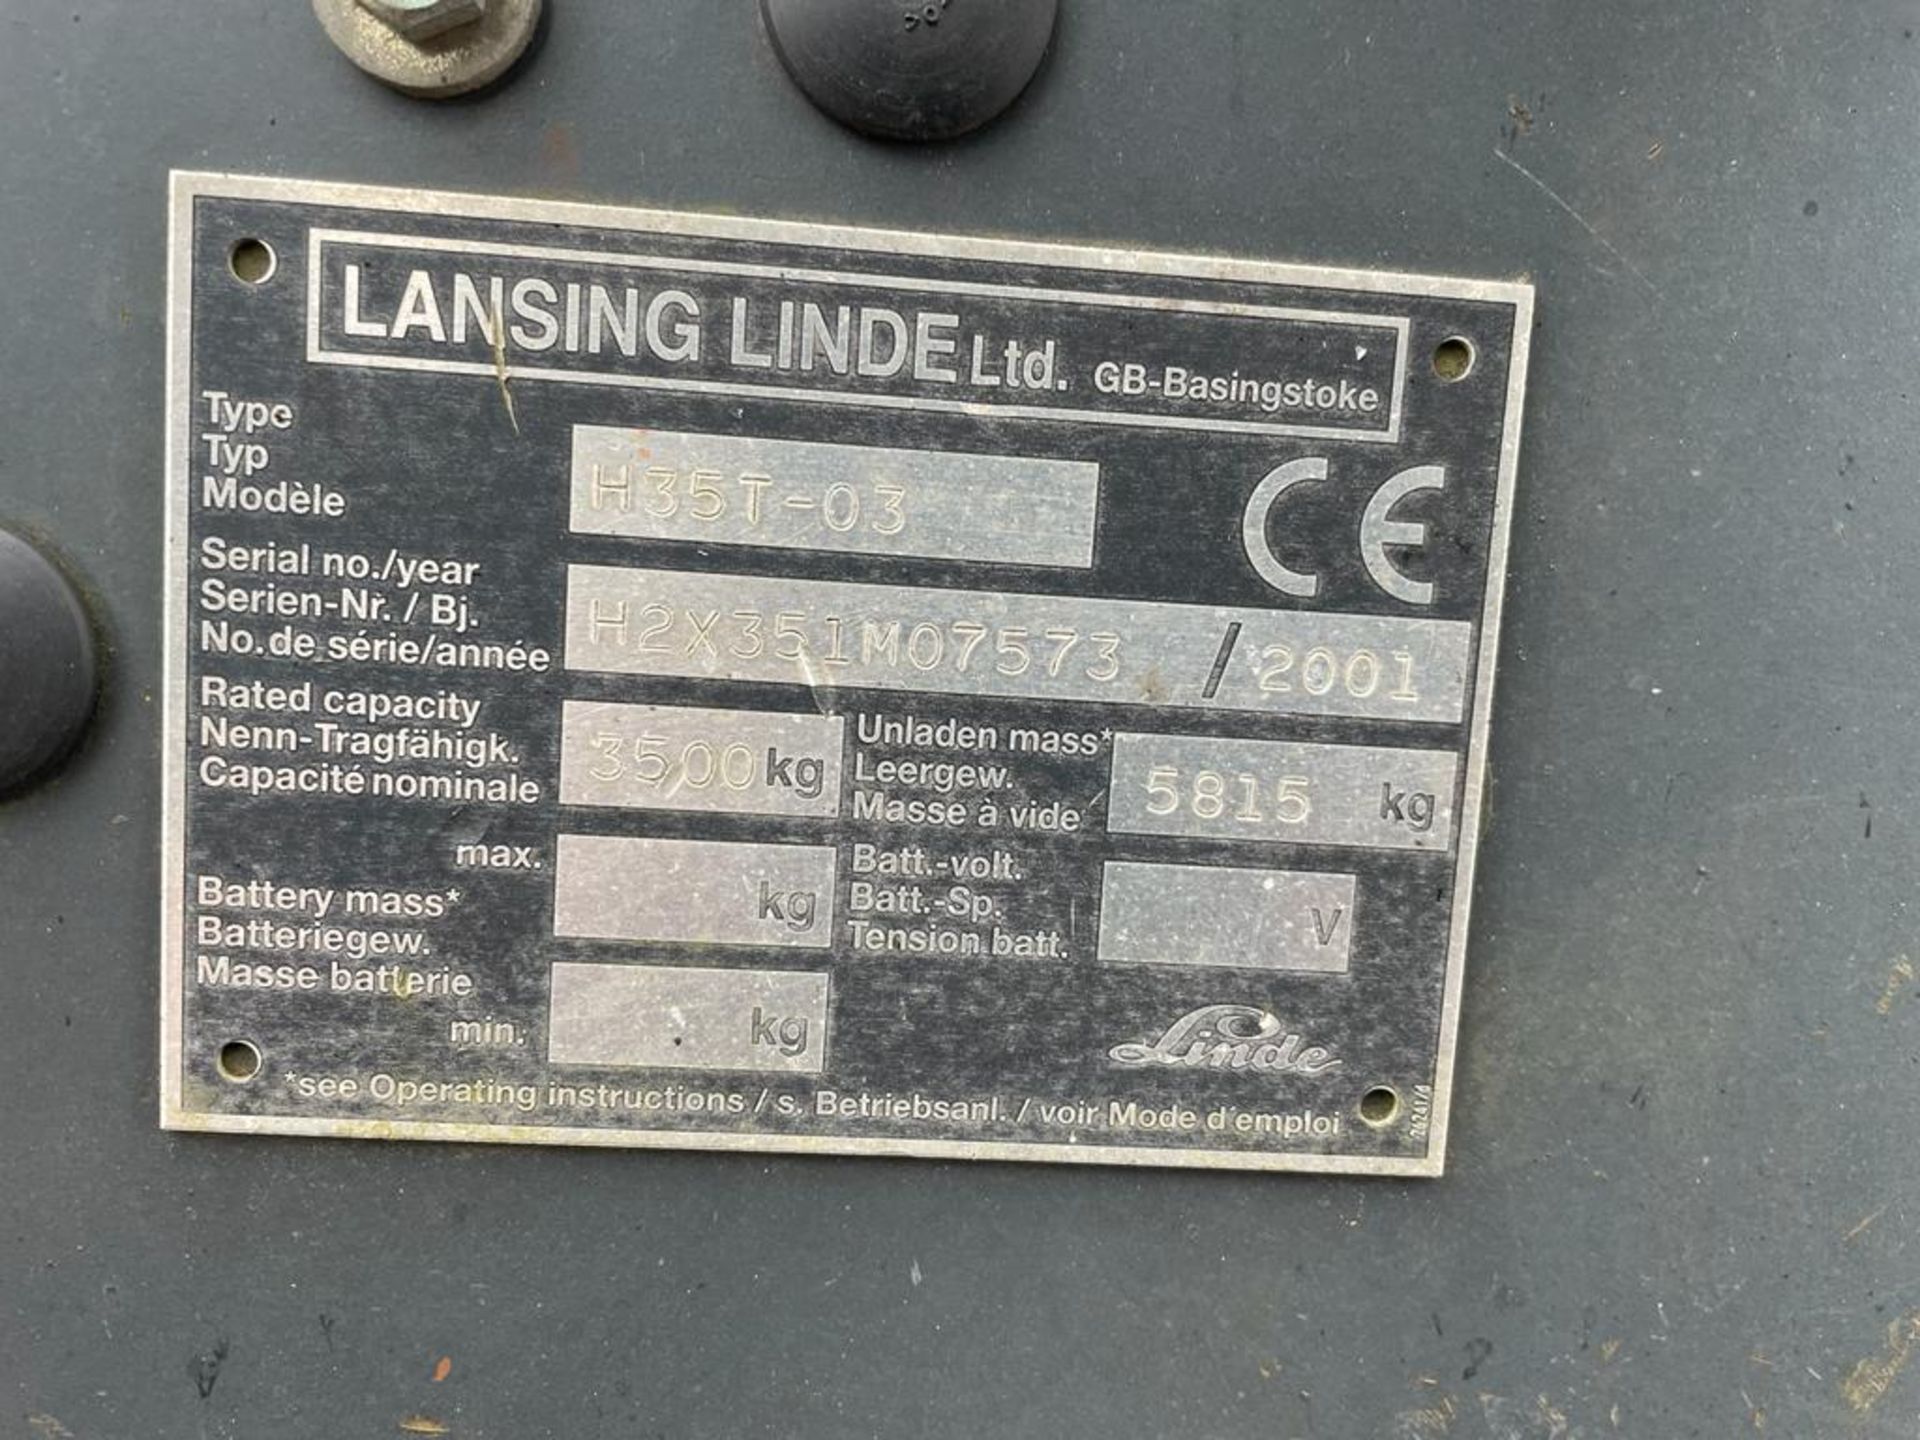 2001 Linde 3.5 Ton Gas Forklift - Image 7 of 7